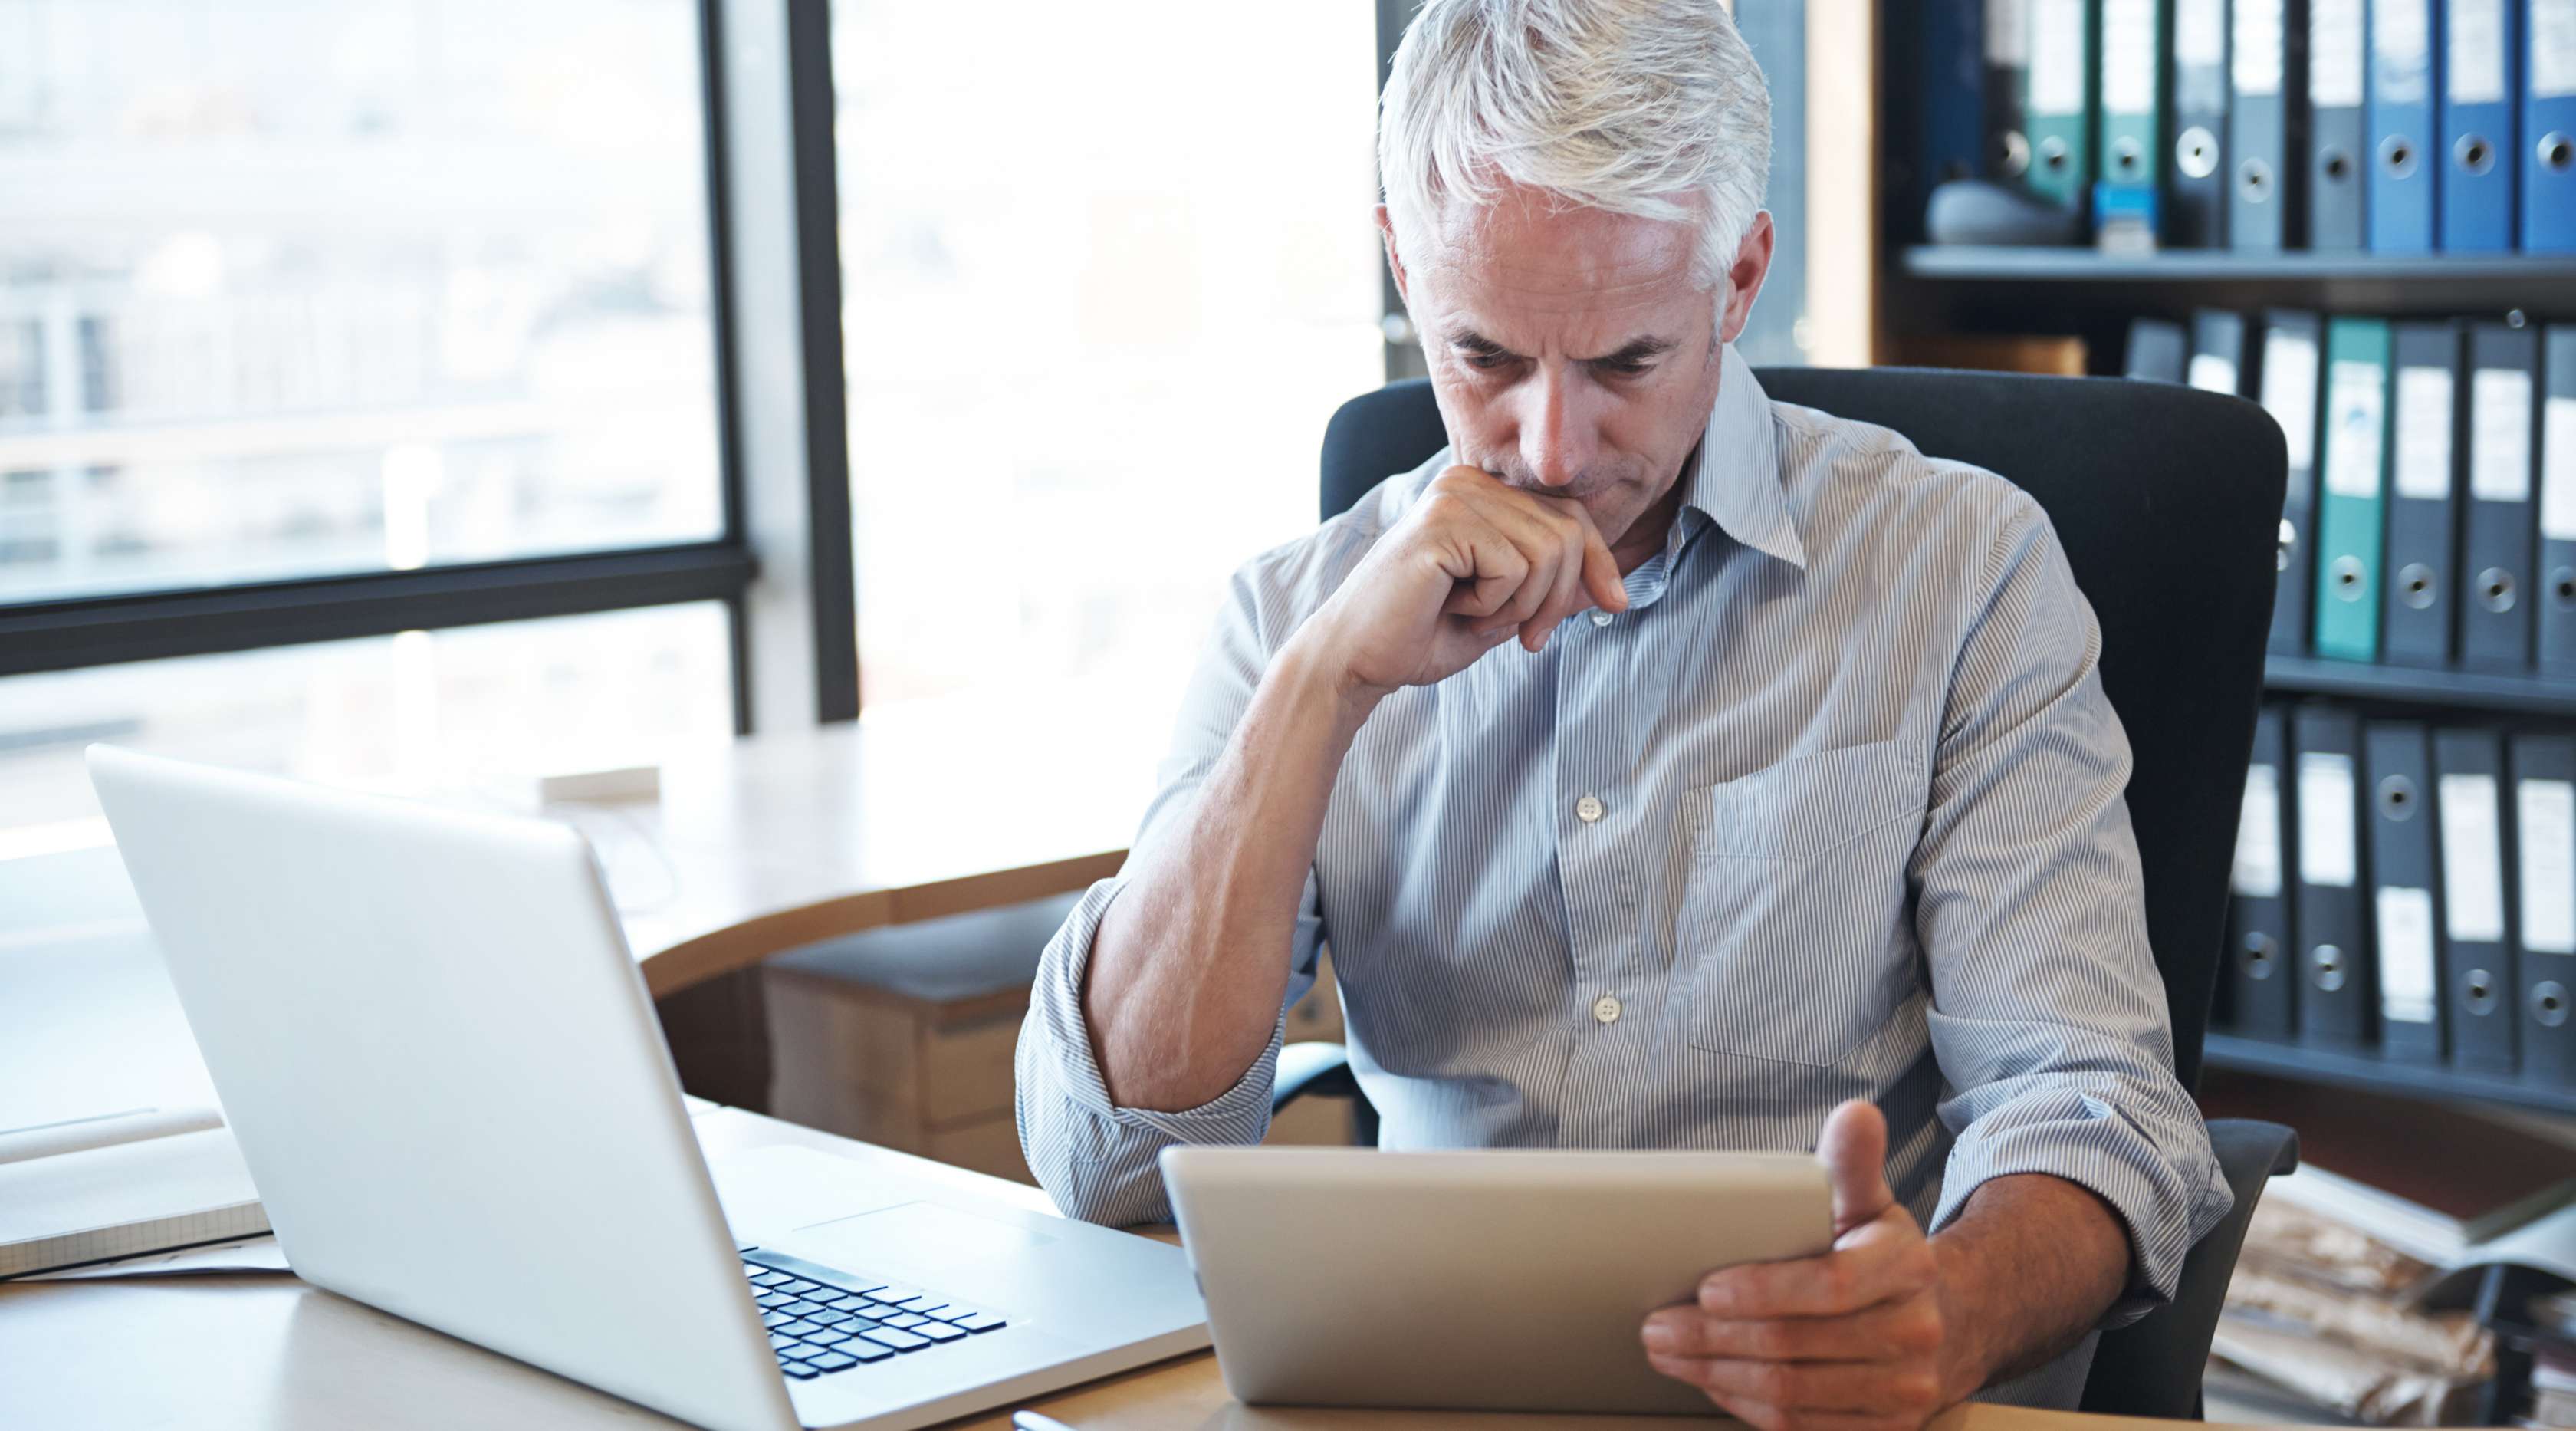 Ein Mann sitzt neben einem aufgeklappten Laptop an einem Schreibtisch in einem Büro und blickt nachdenklich in sein Tablet, welches er in seiner Hand hält.